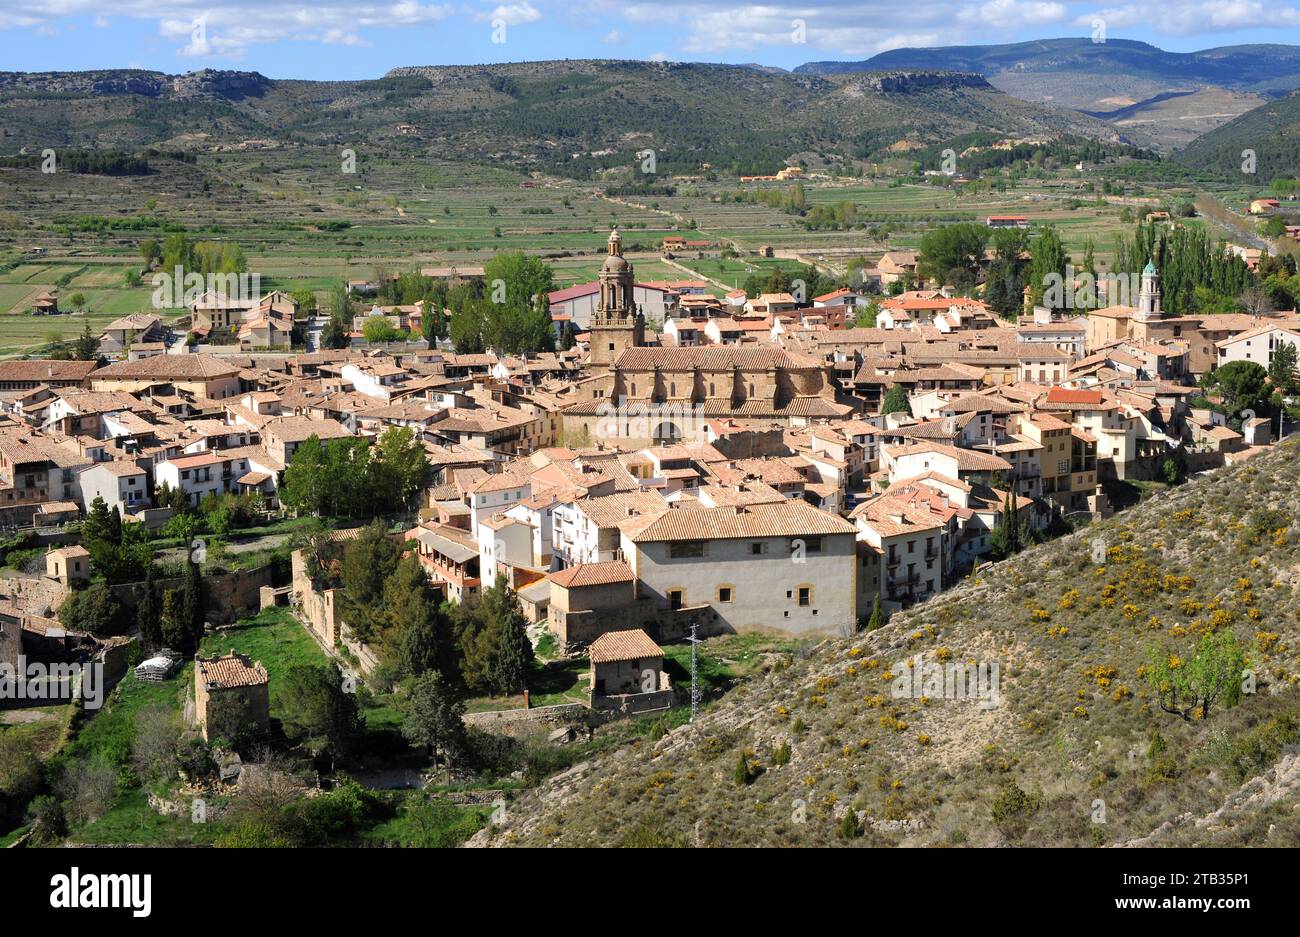 Rubielos de Mora. Gudar-Javalambre region, Teruel province, Aragon, Spain. Stock Photo